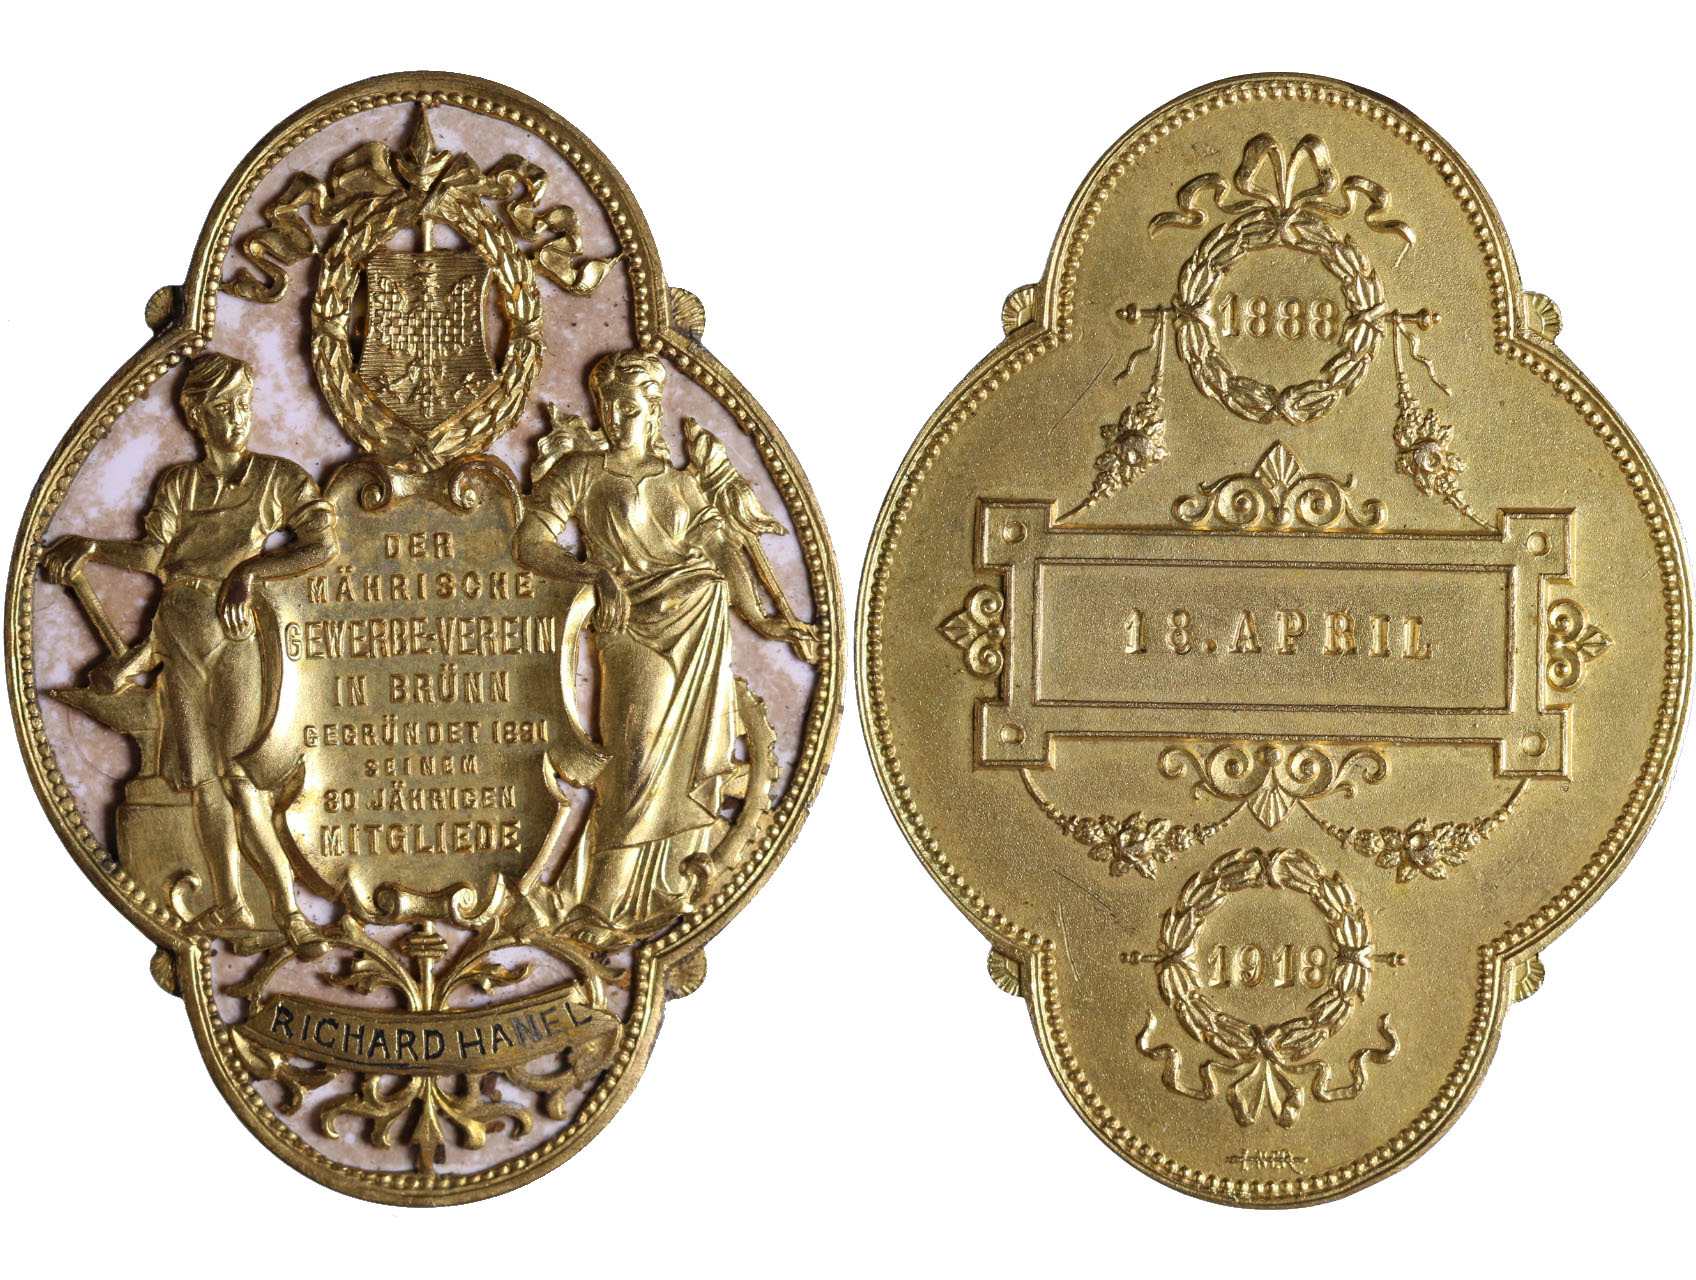 Spolkové - Pamětní plaketa moravského obchodního sdružení Brno ke 30. letému členství 1888-1918 udělená Richardu Hanelovi, pozlacený bronz, smalt, 57x42.5 mm, původní etue